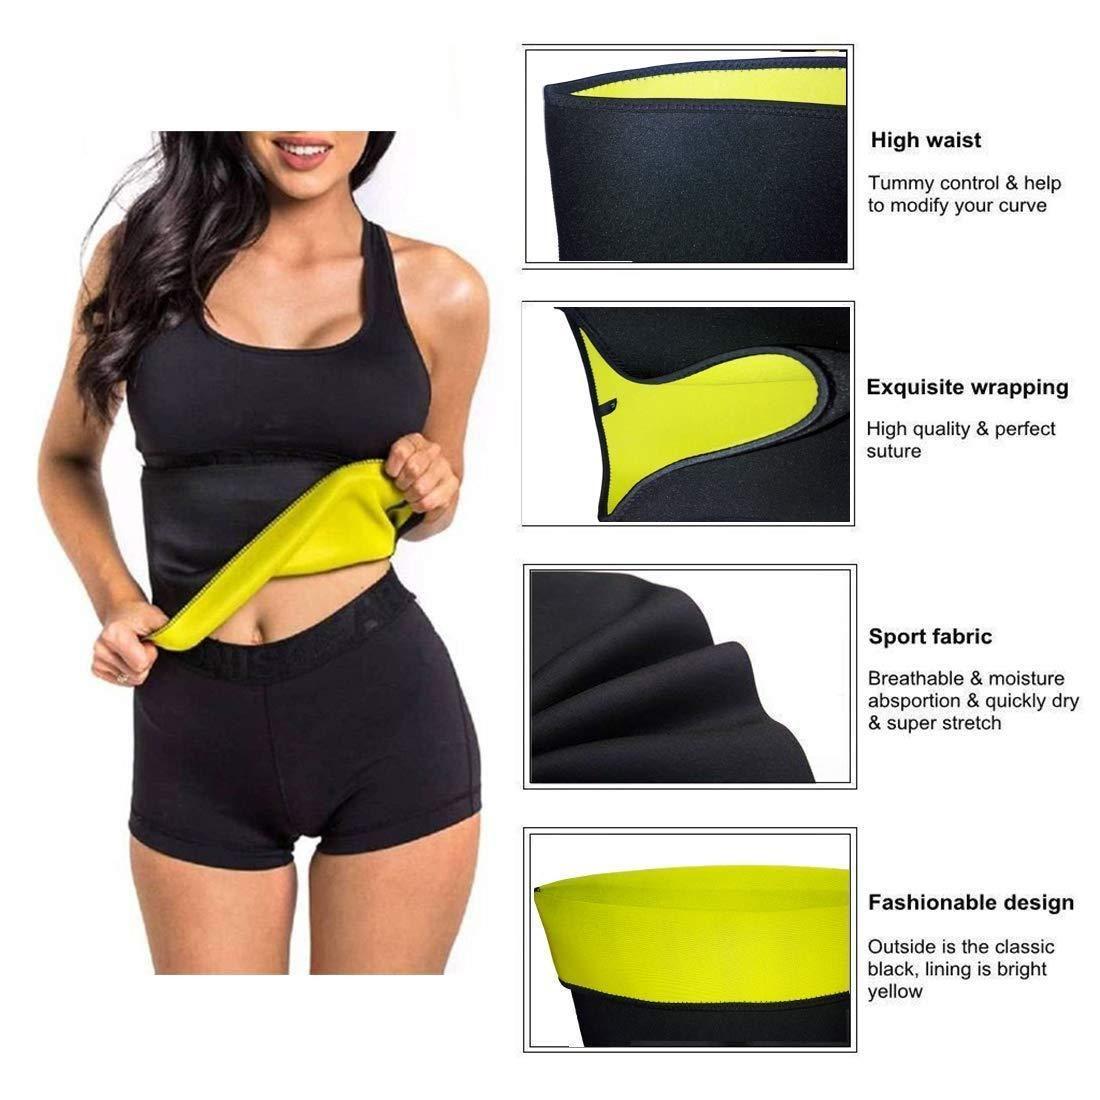 Sweat Belt - Hot Body Shaper Belly Fat Burner For Men & Women